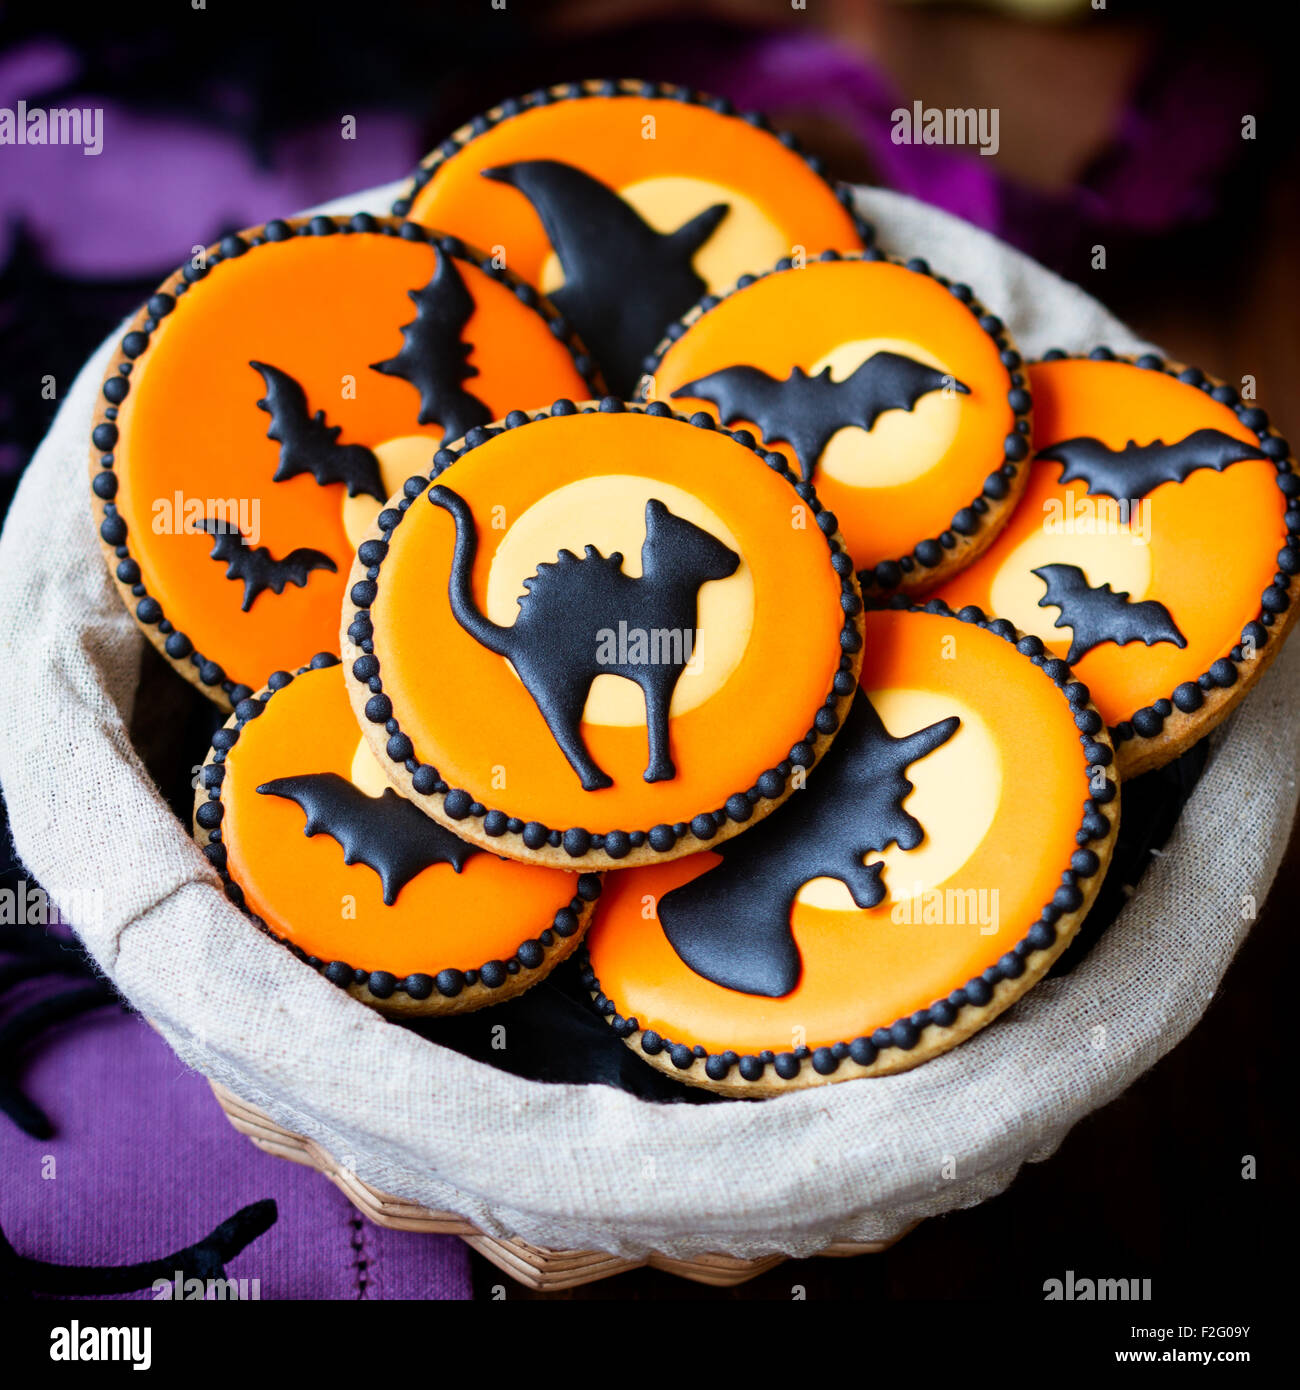 Basket Of Halloween Cookies Stock Photo 87632663 Alamy